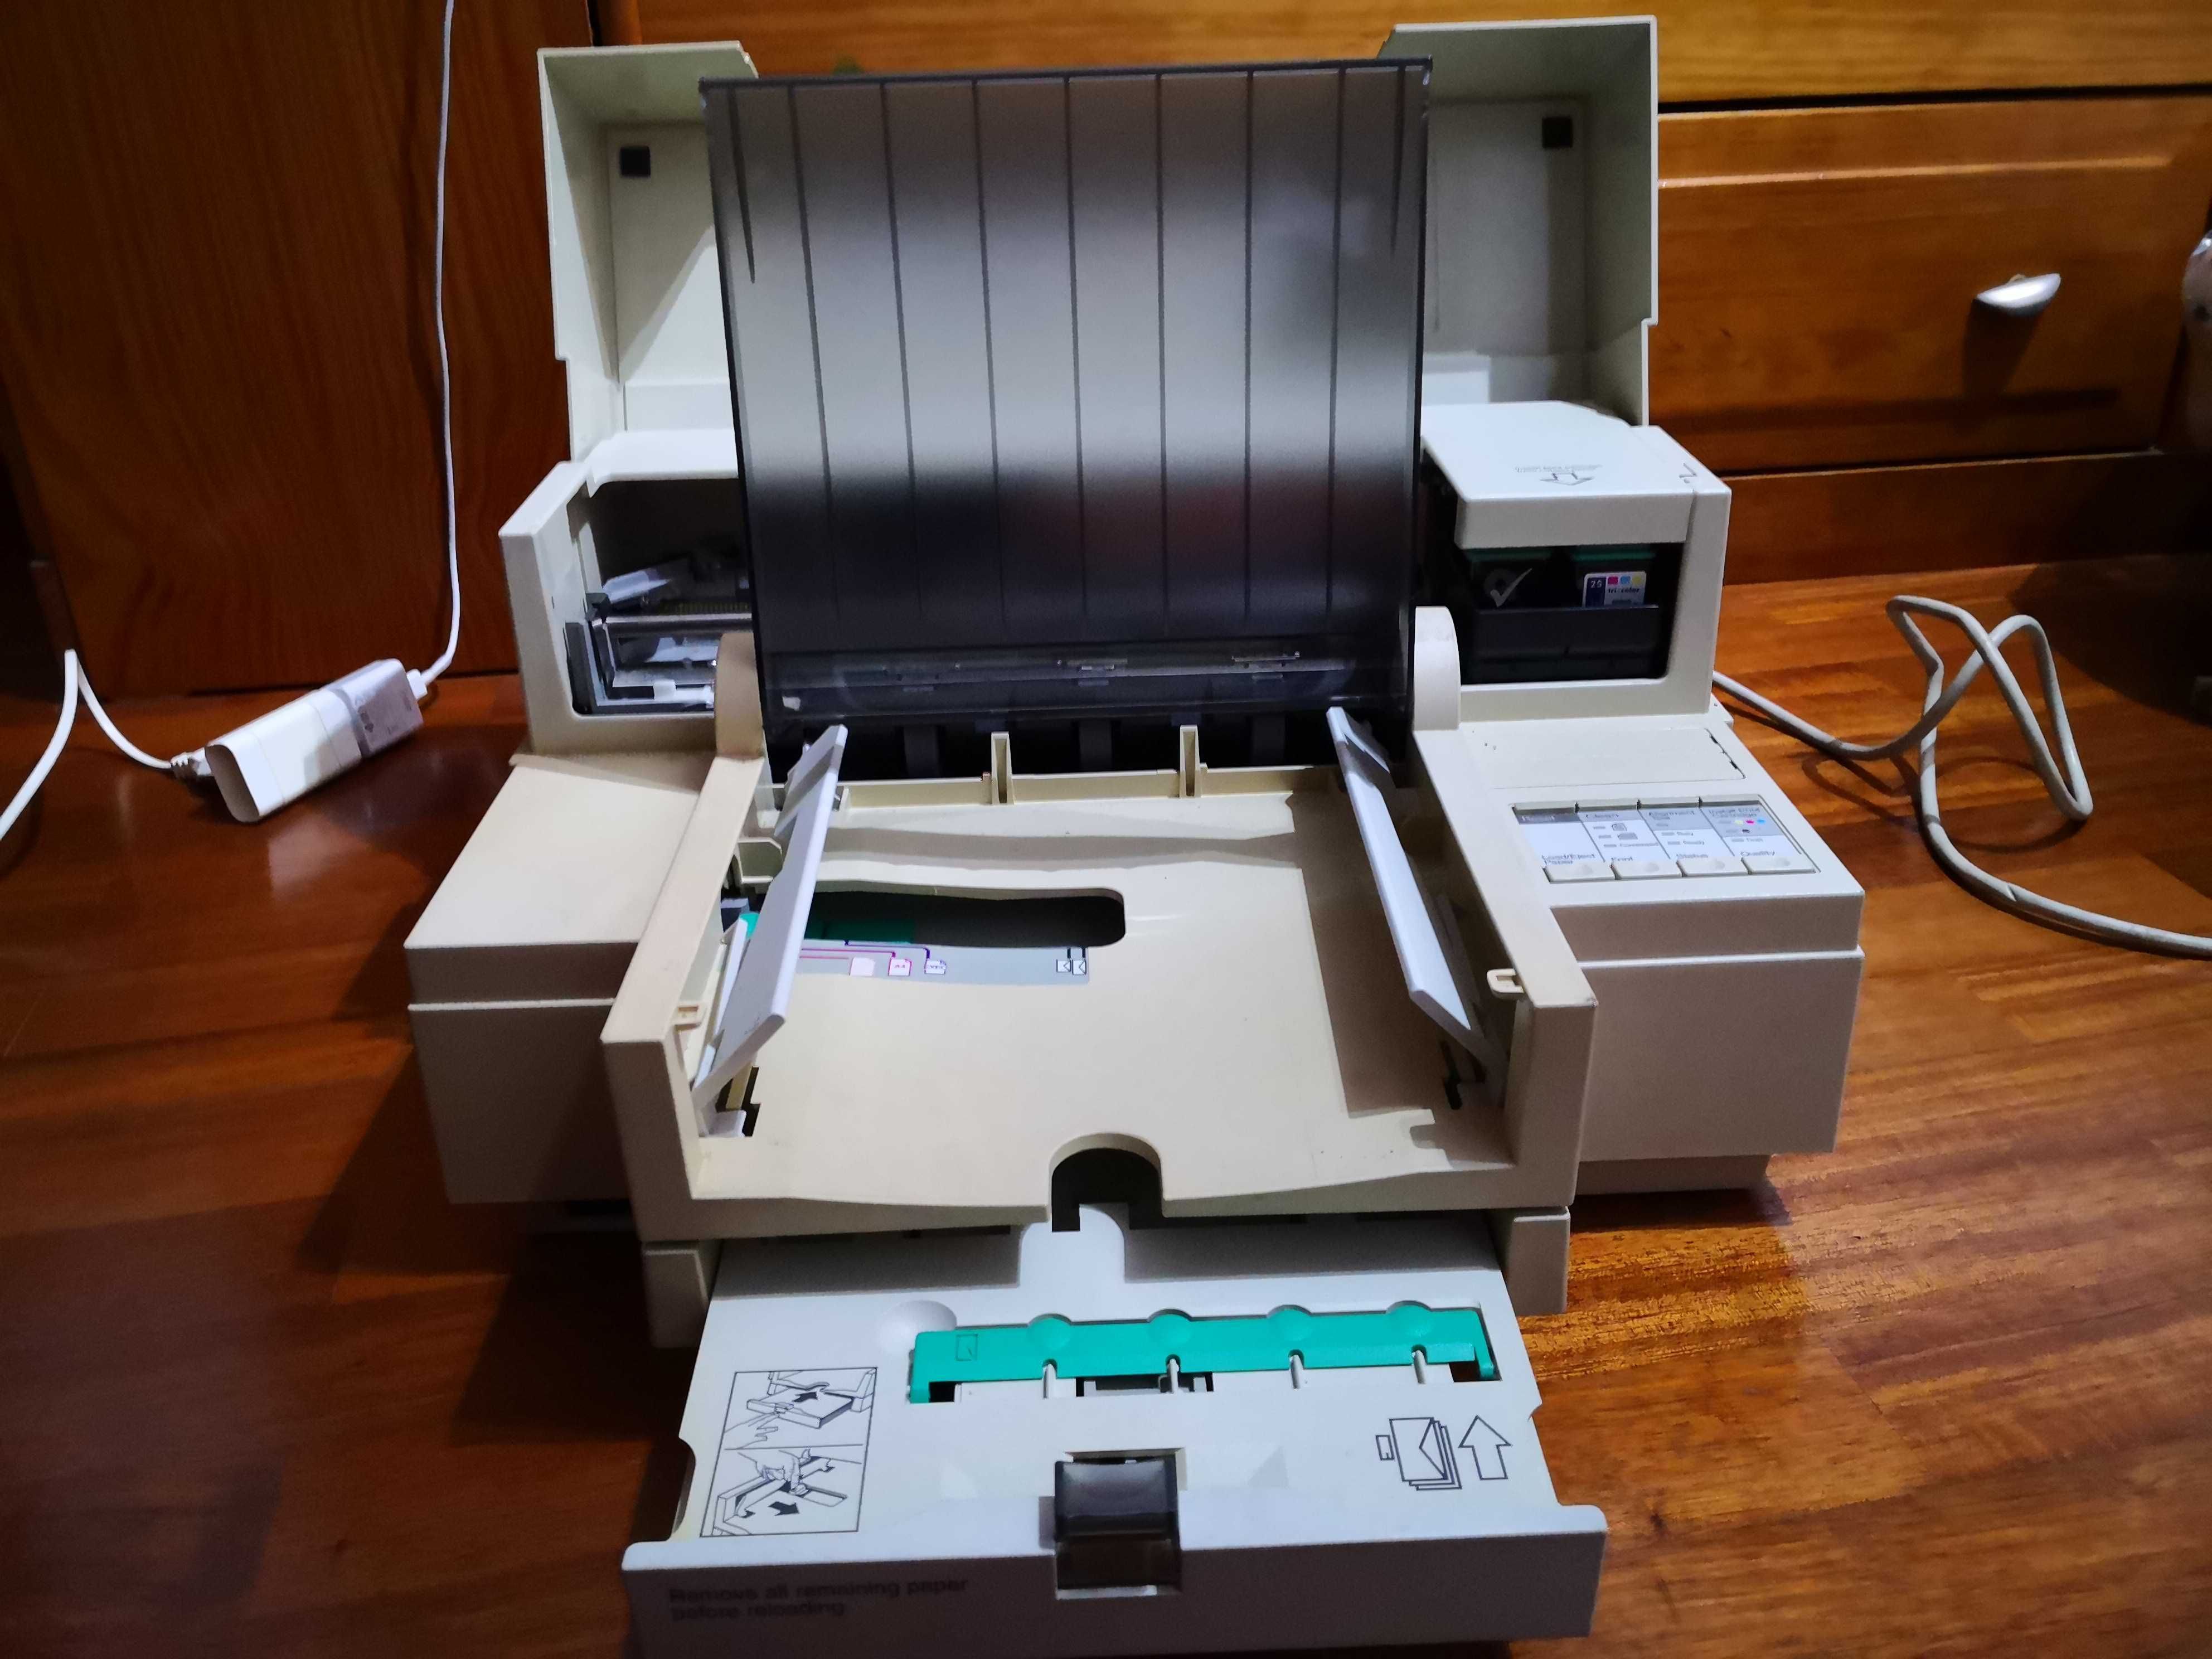 Impressora HP DeskJet 550C